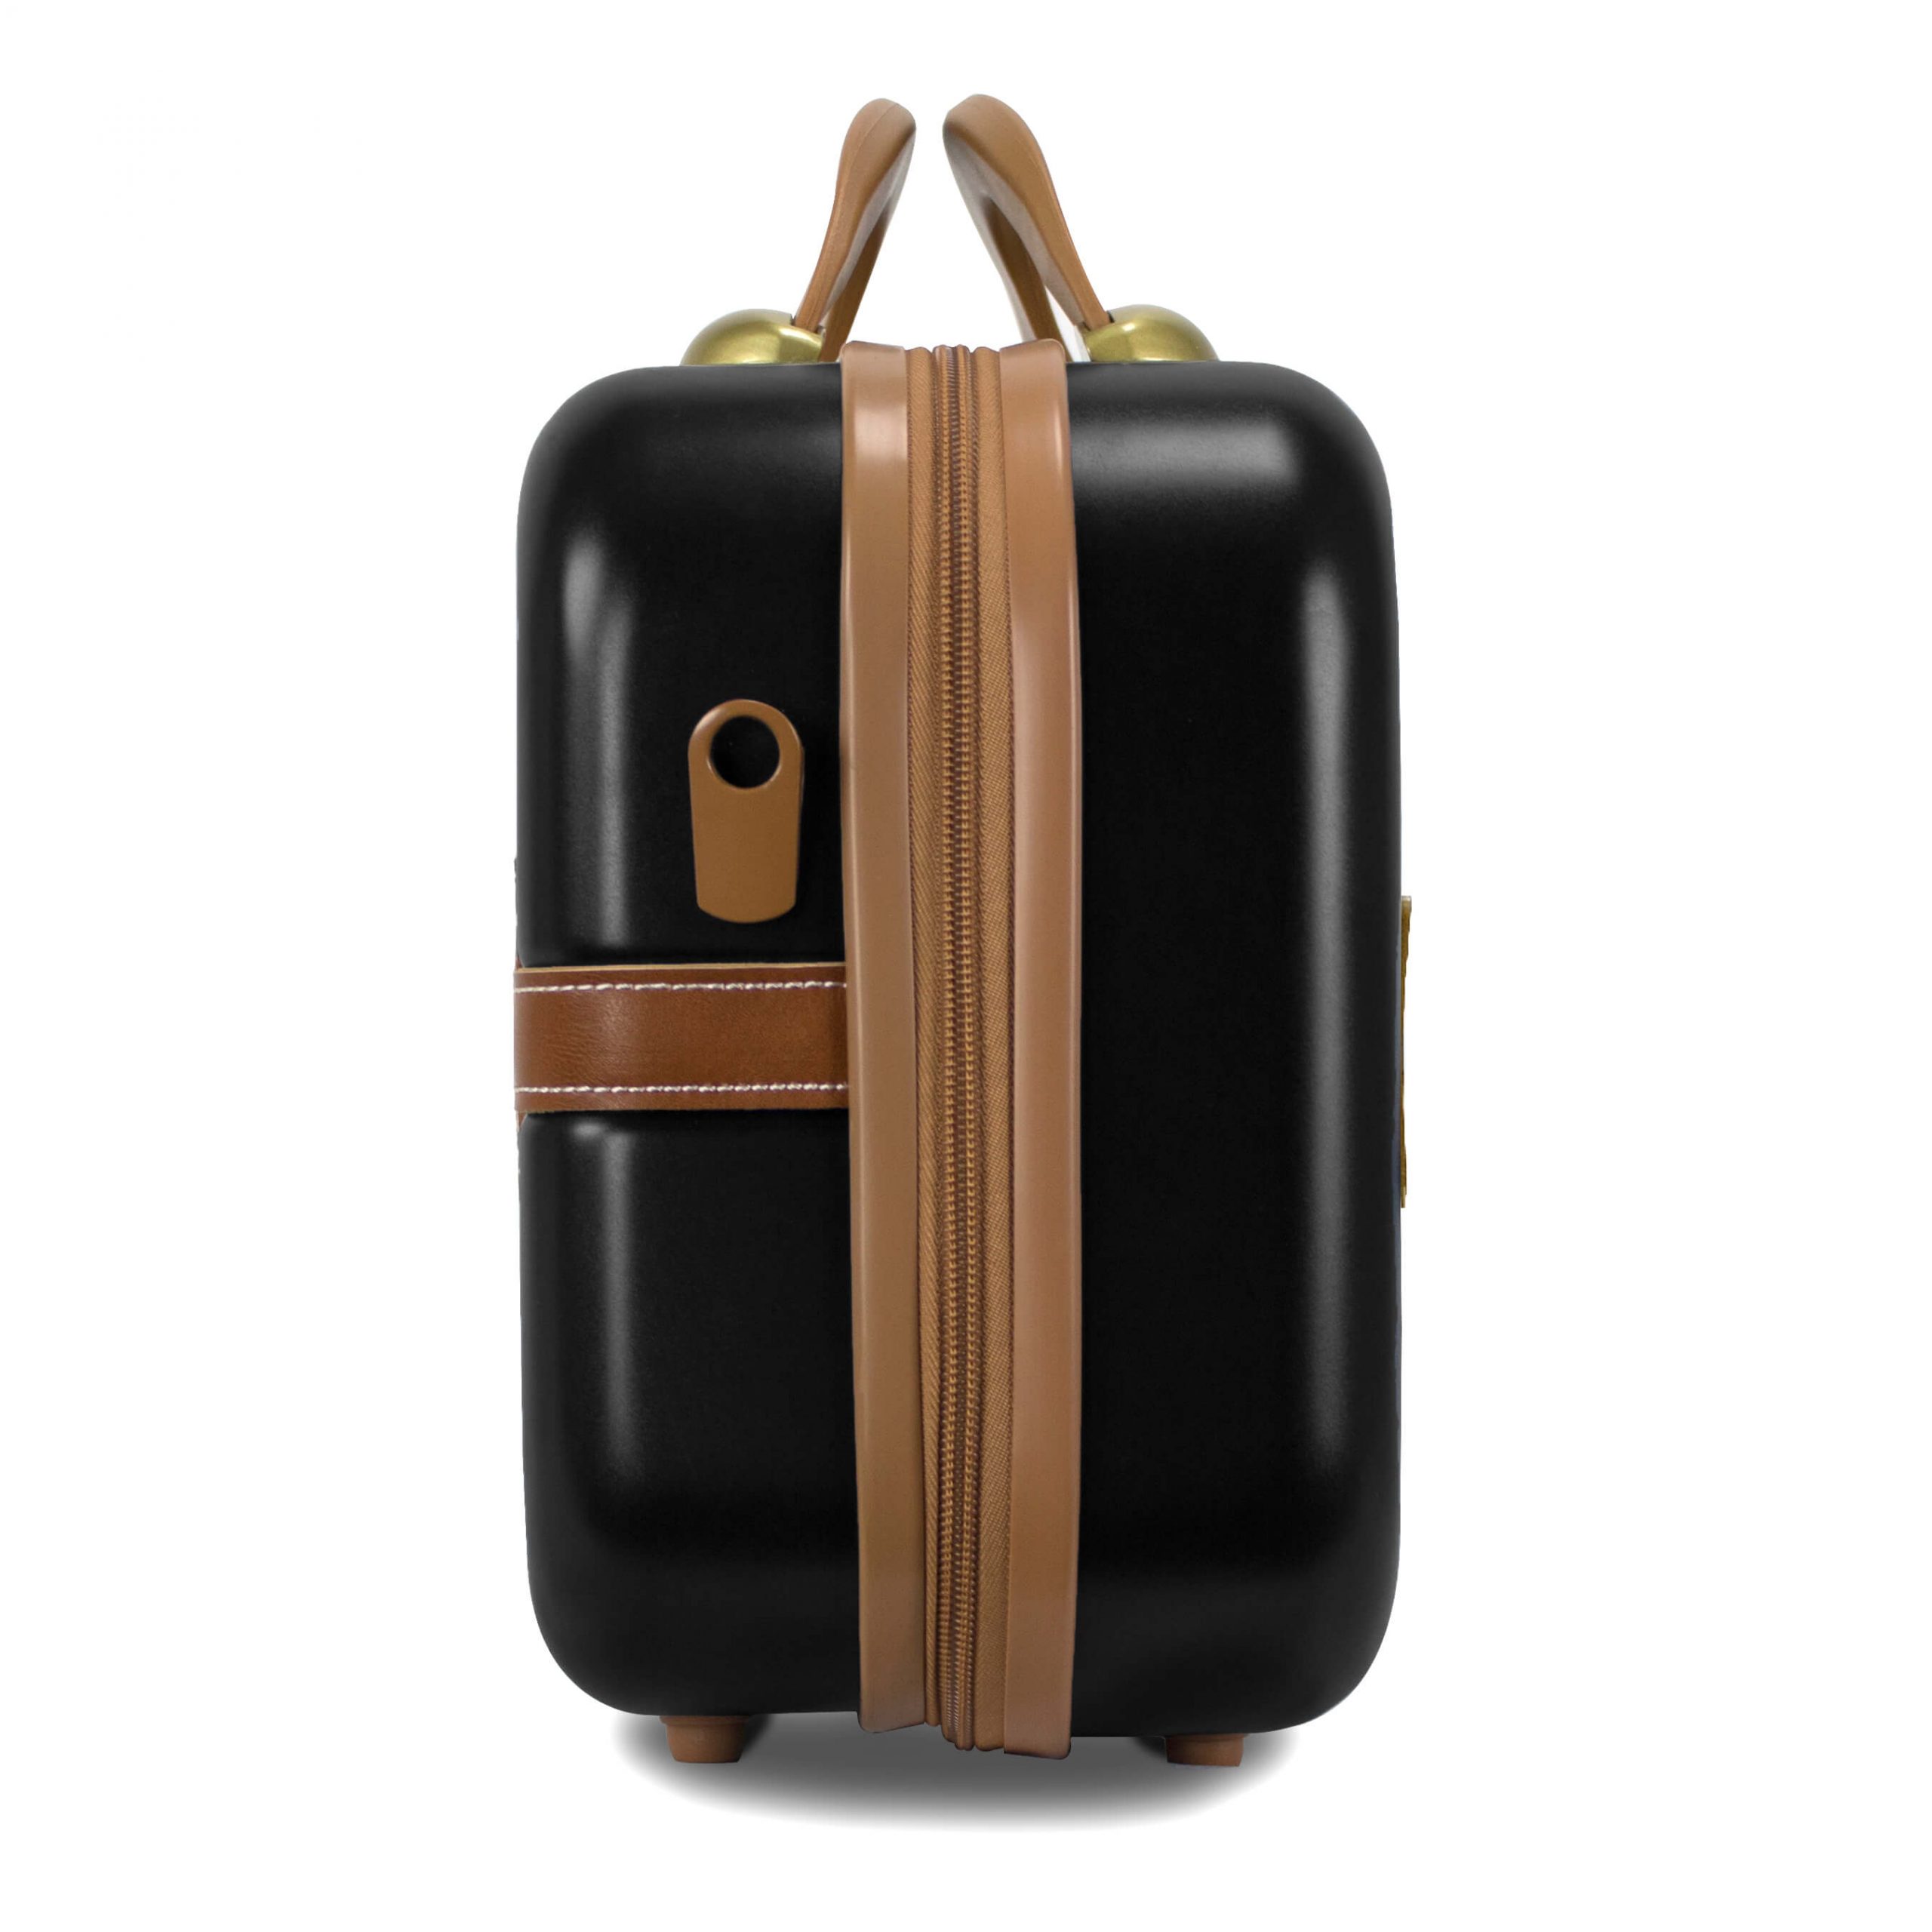 ☆安心の定価販売☆】 Chariot Gatsby 2-piece set Hardside Expandable Carry On Luggage  With Matching Beauty Case (Mint)